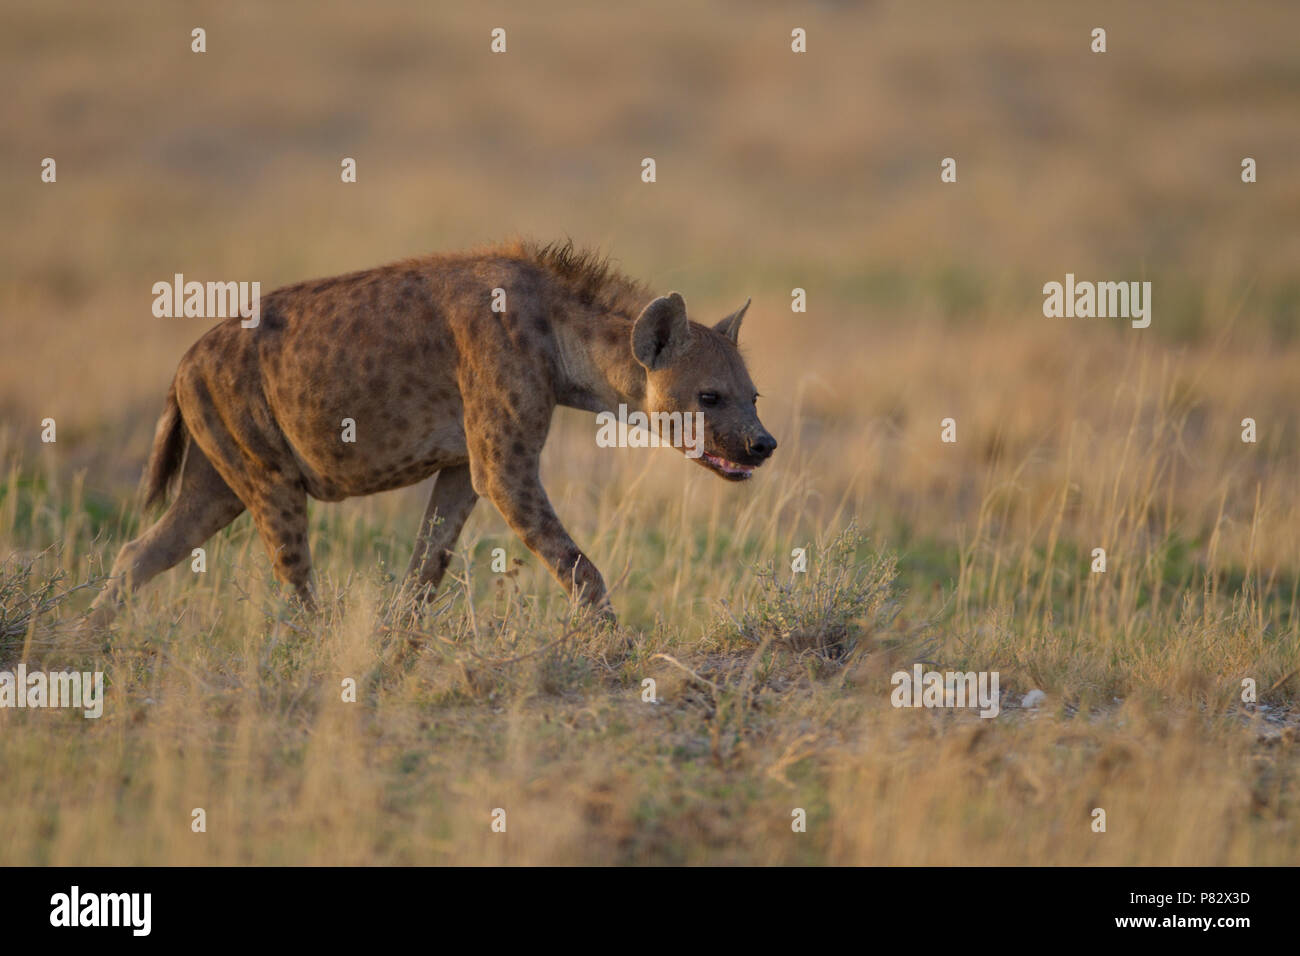 La iena alla ricerca di cibo in Etosha Foto Stock